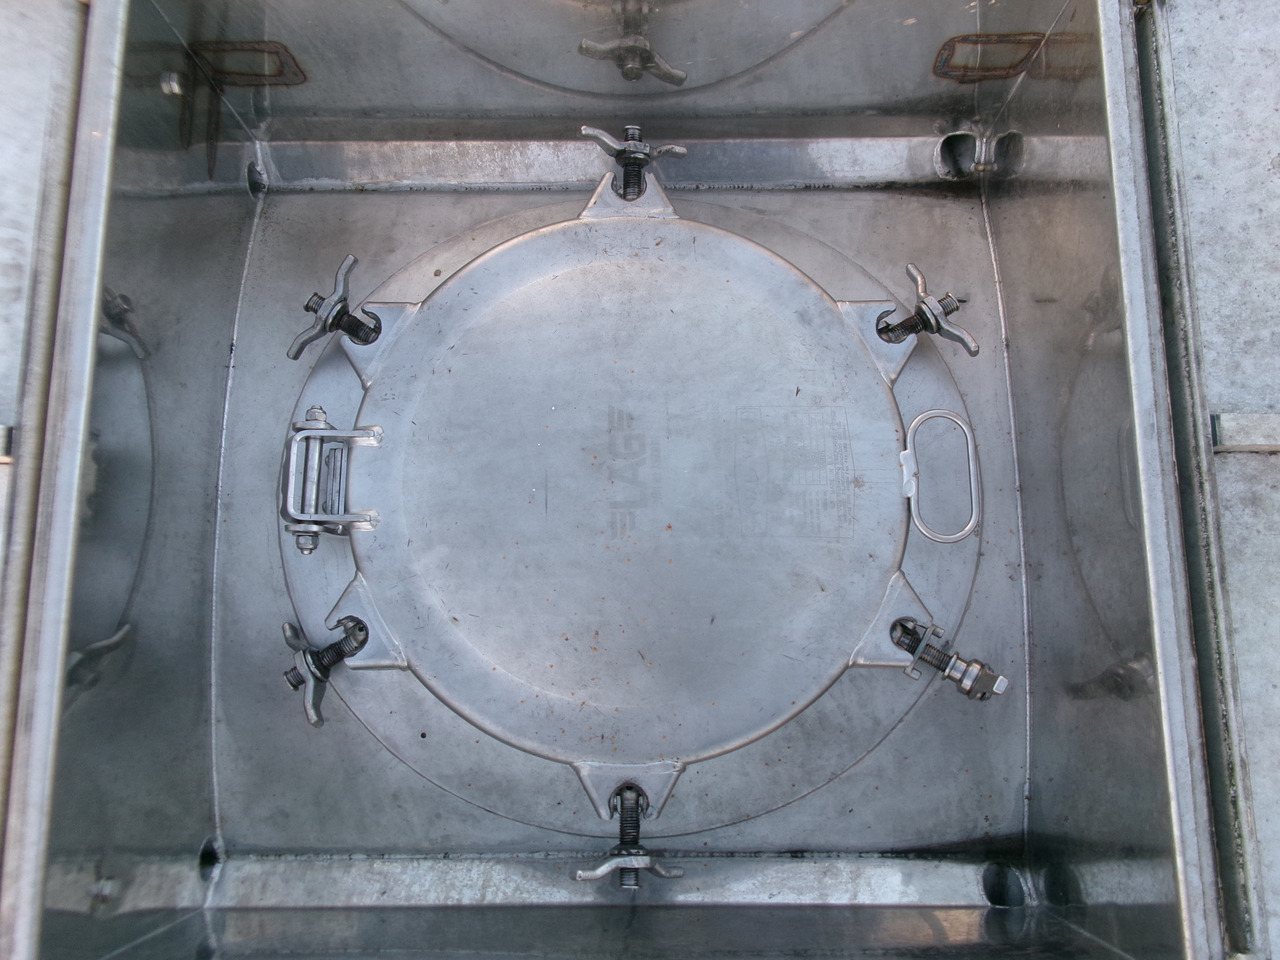 Poluprikolica cisterna za prijevoz kemikalija L.A.G. Chemical tank inox 37.5 m3 / 1 comp: slika Poluprikolica cisterna za prijevoz kemikalija L.A.G. Chemical tank inox 37.5 m3 / 1 comp